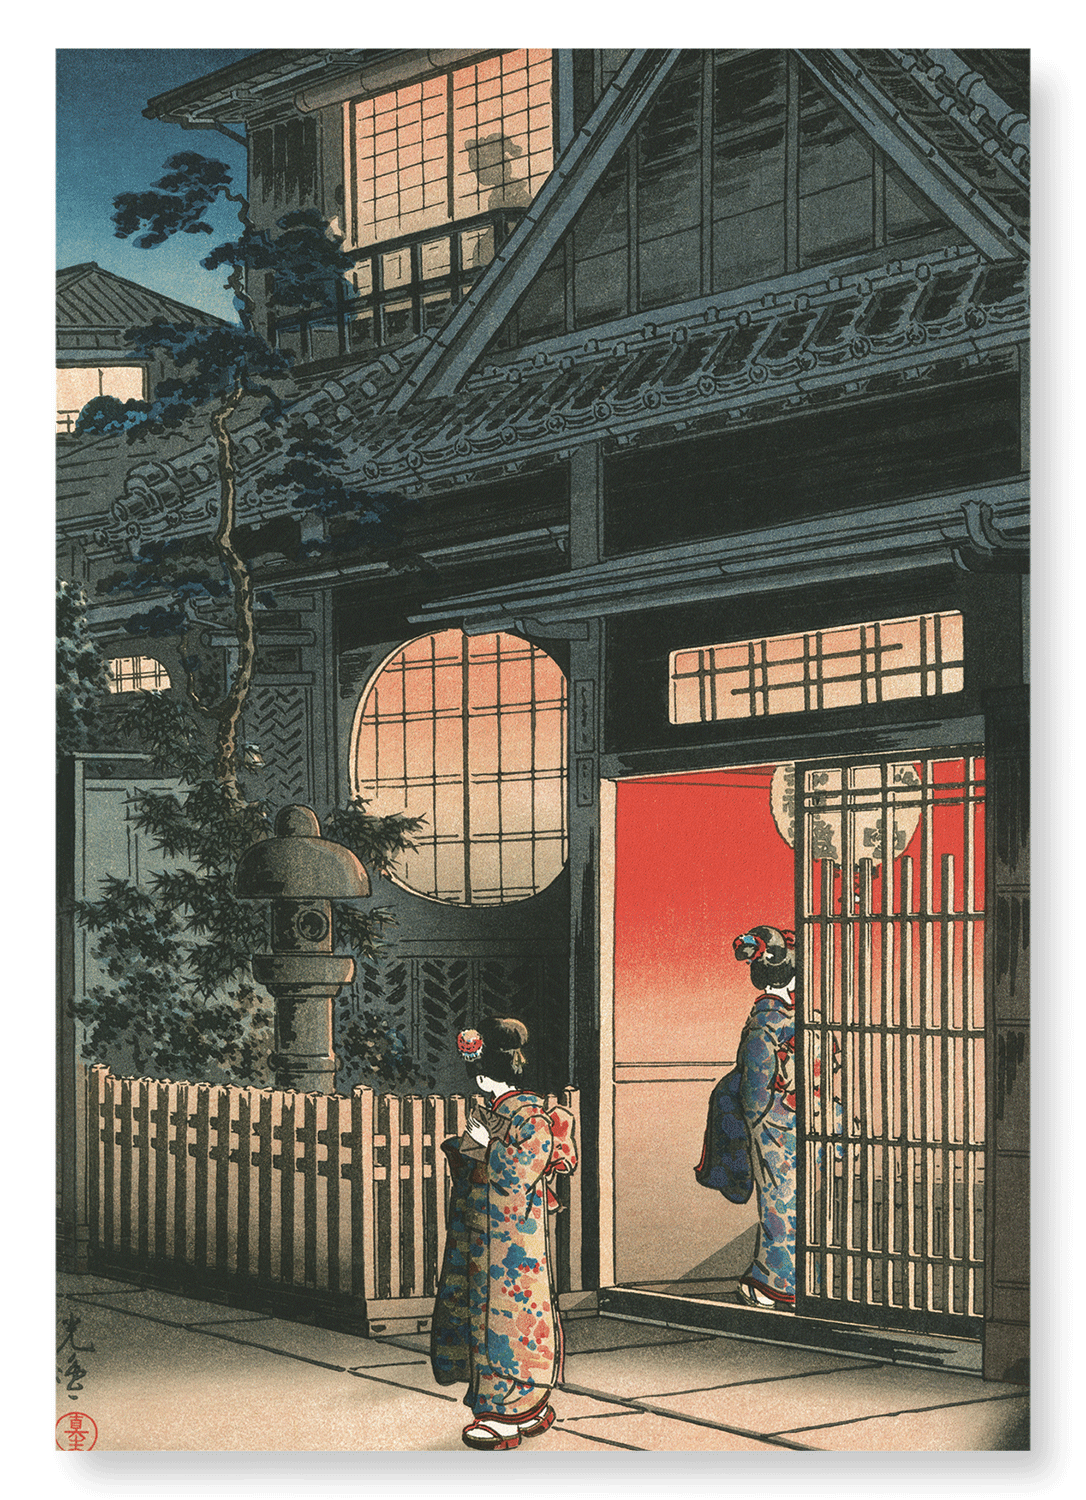 TEAHOUSE AT YOTSUYA ARAKICHO (1935)